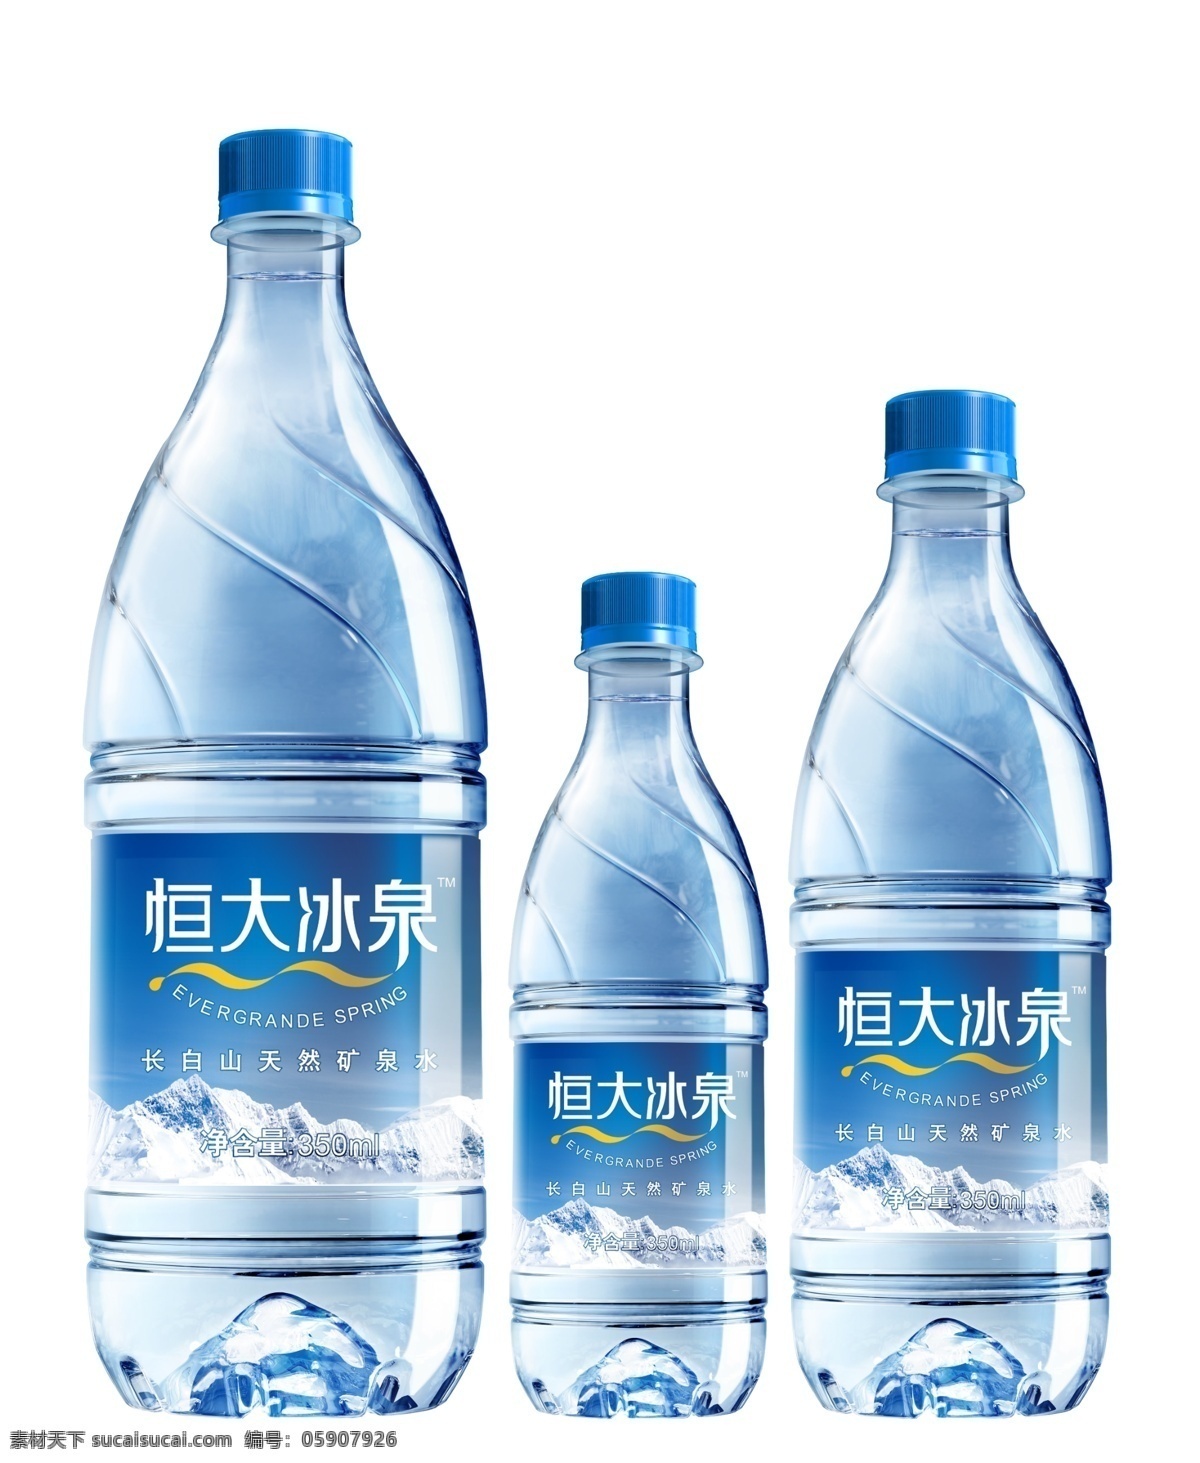 恒大 冰泉 产品包装 恒大冰泉 矿泉水 包装 塑料包装 瓶子 包装设计